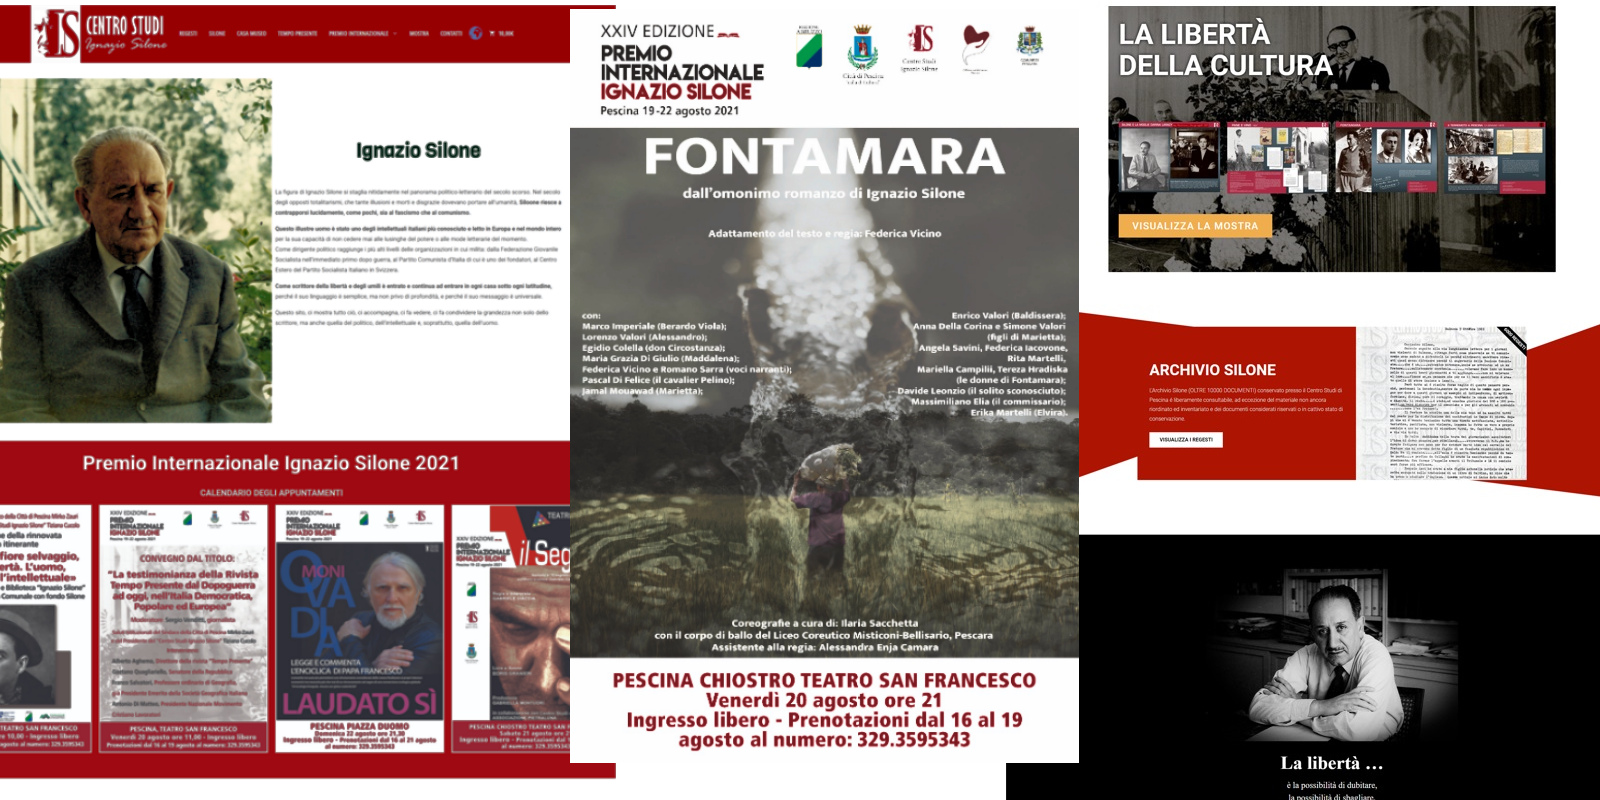 Seconda giornata del Premio Internazionale Silone con la presentazione del nuovo sito web Silone.it, il convegno su Tempo Presente e lo spettacolo “Fontamara”